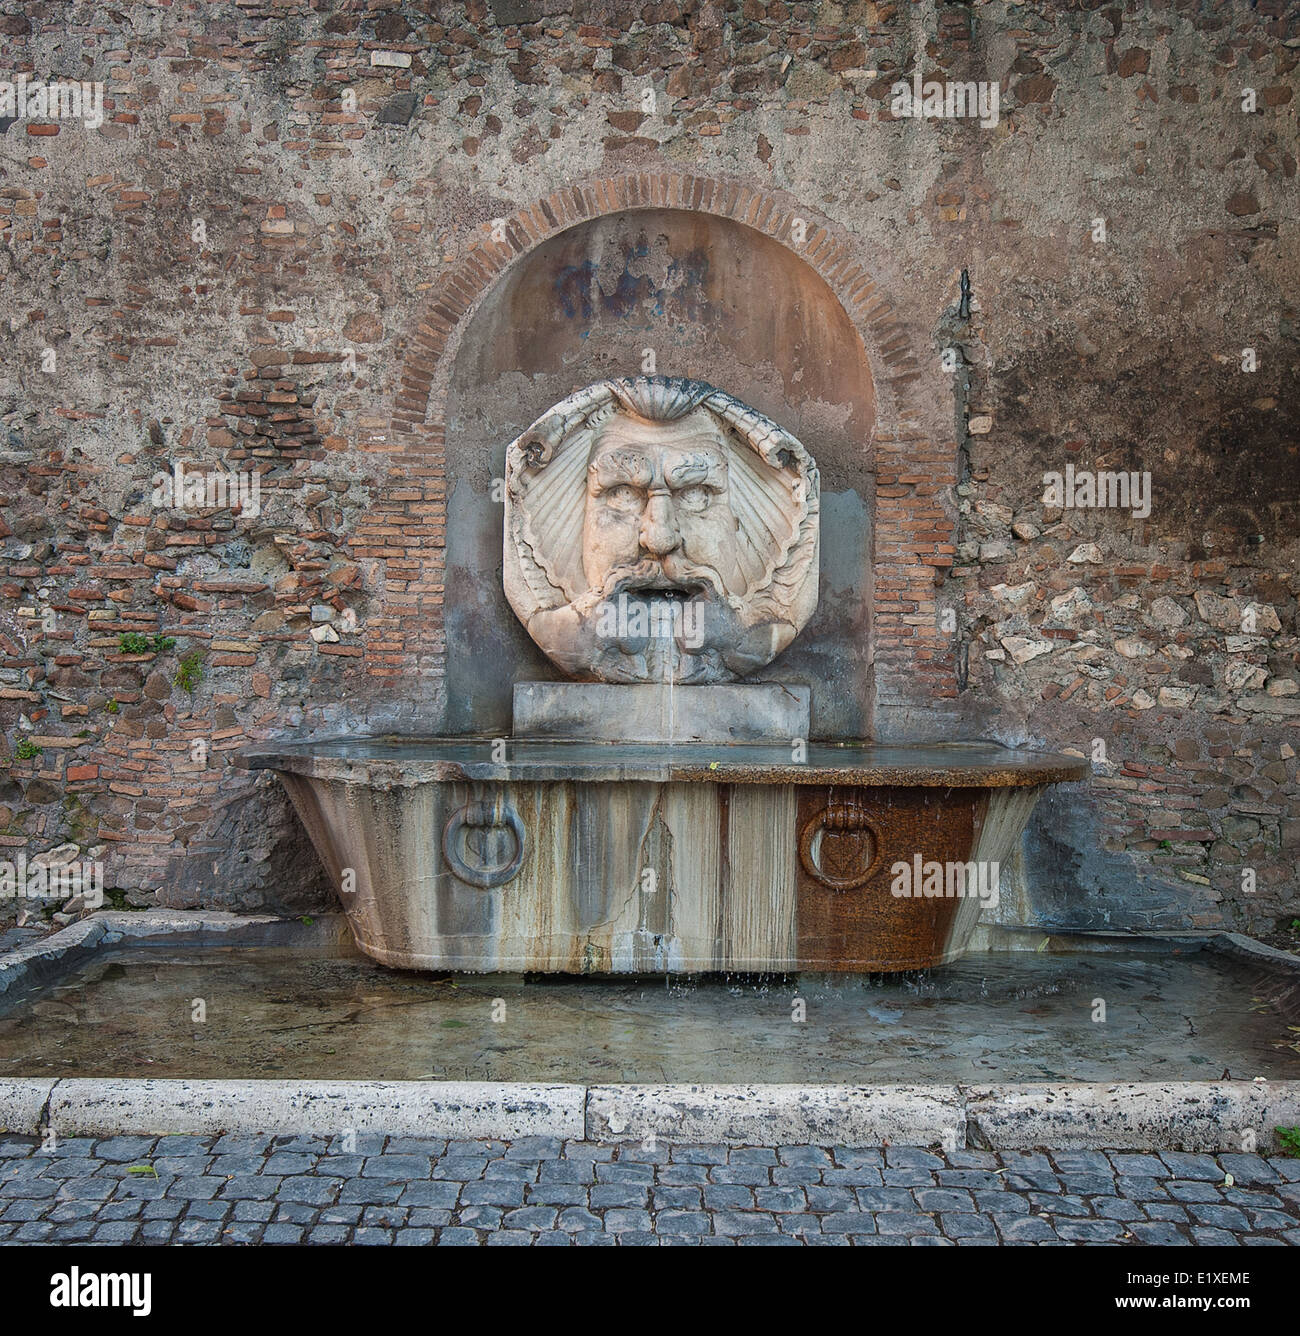 Fontaine en colline de l'Aventin, Rome, Italie Banque D'Images